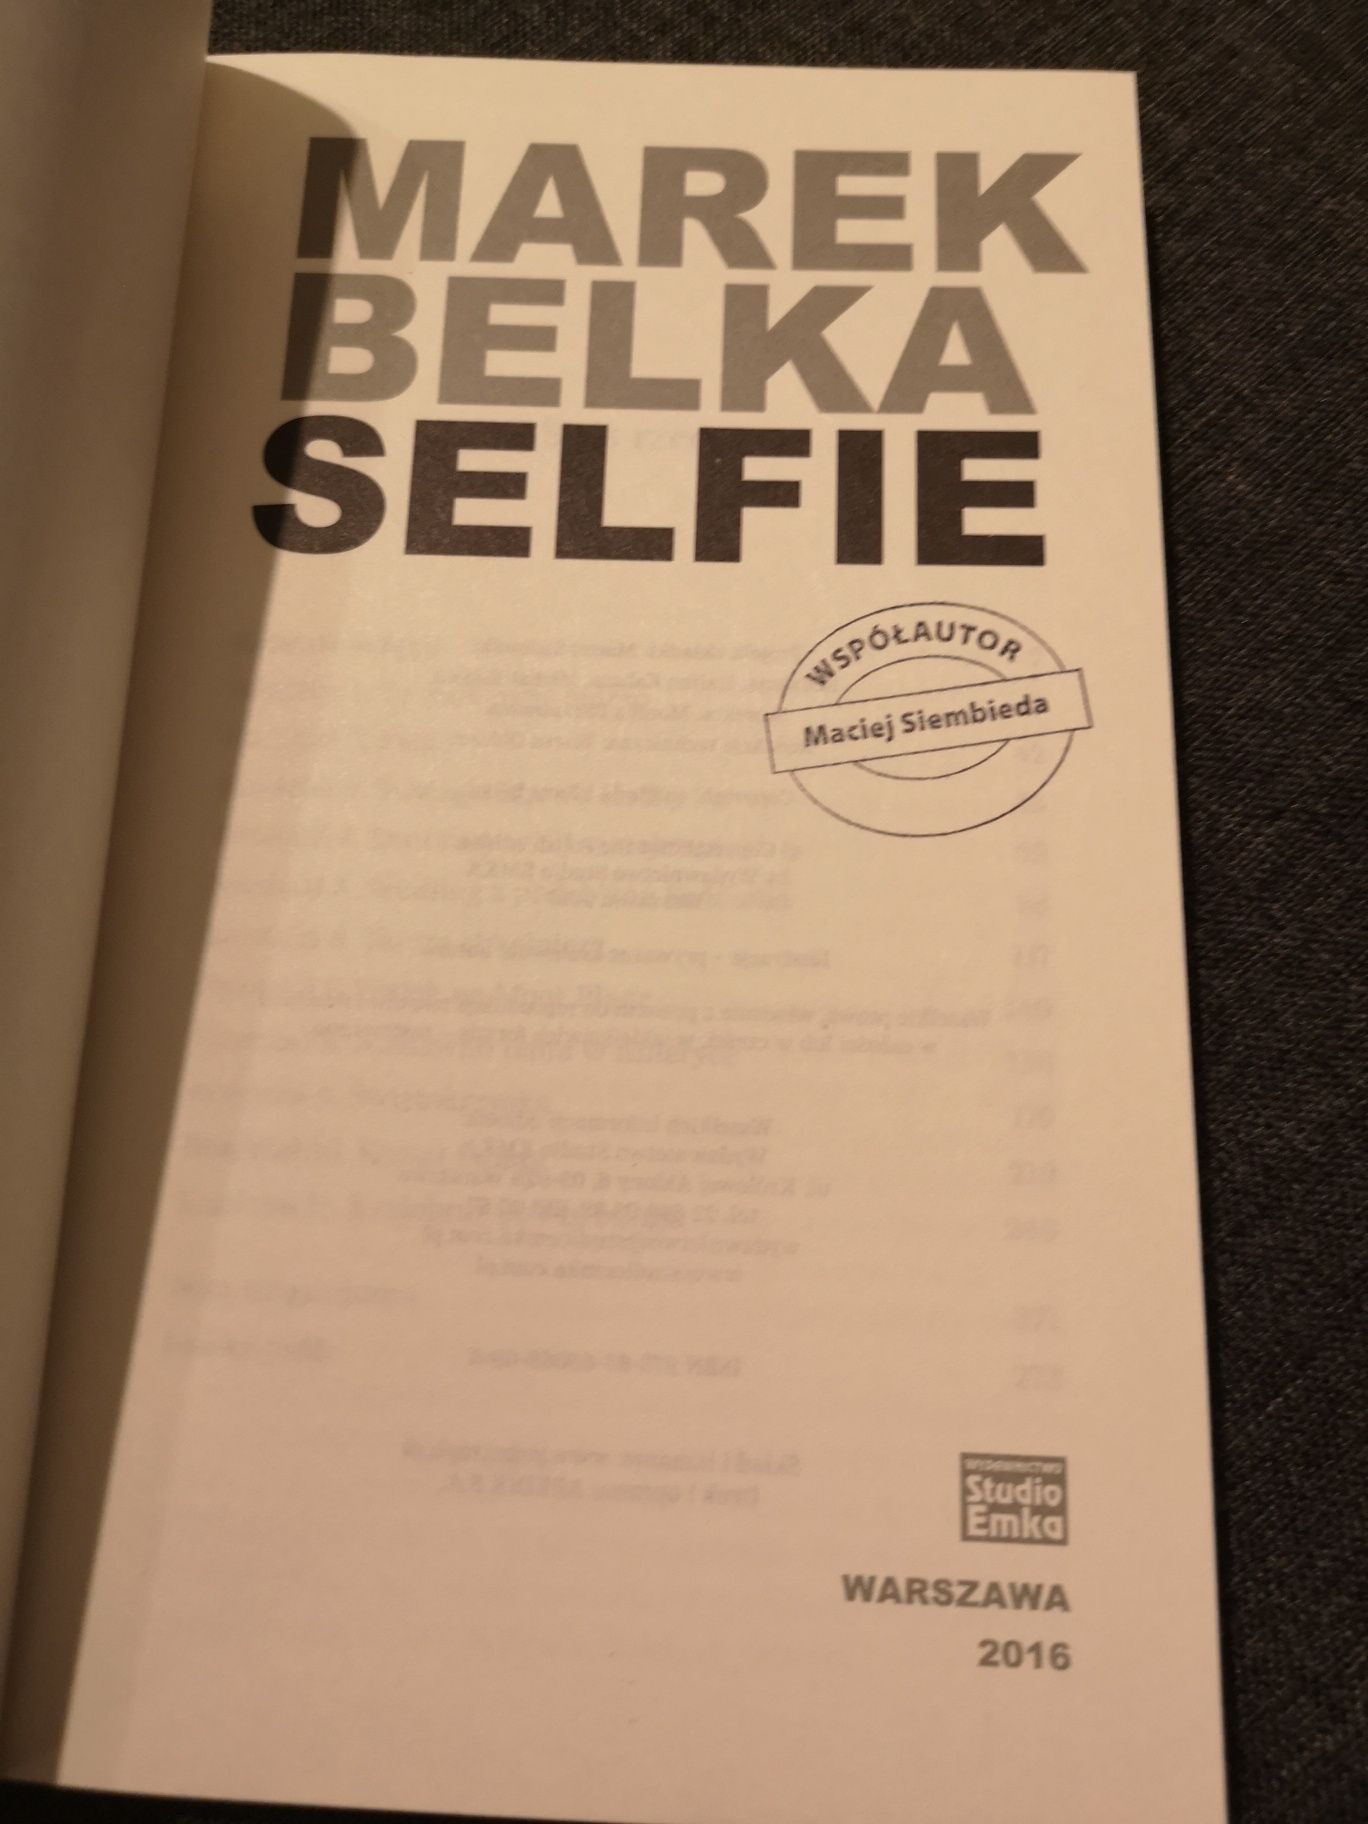 Marek Belka selfie